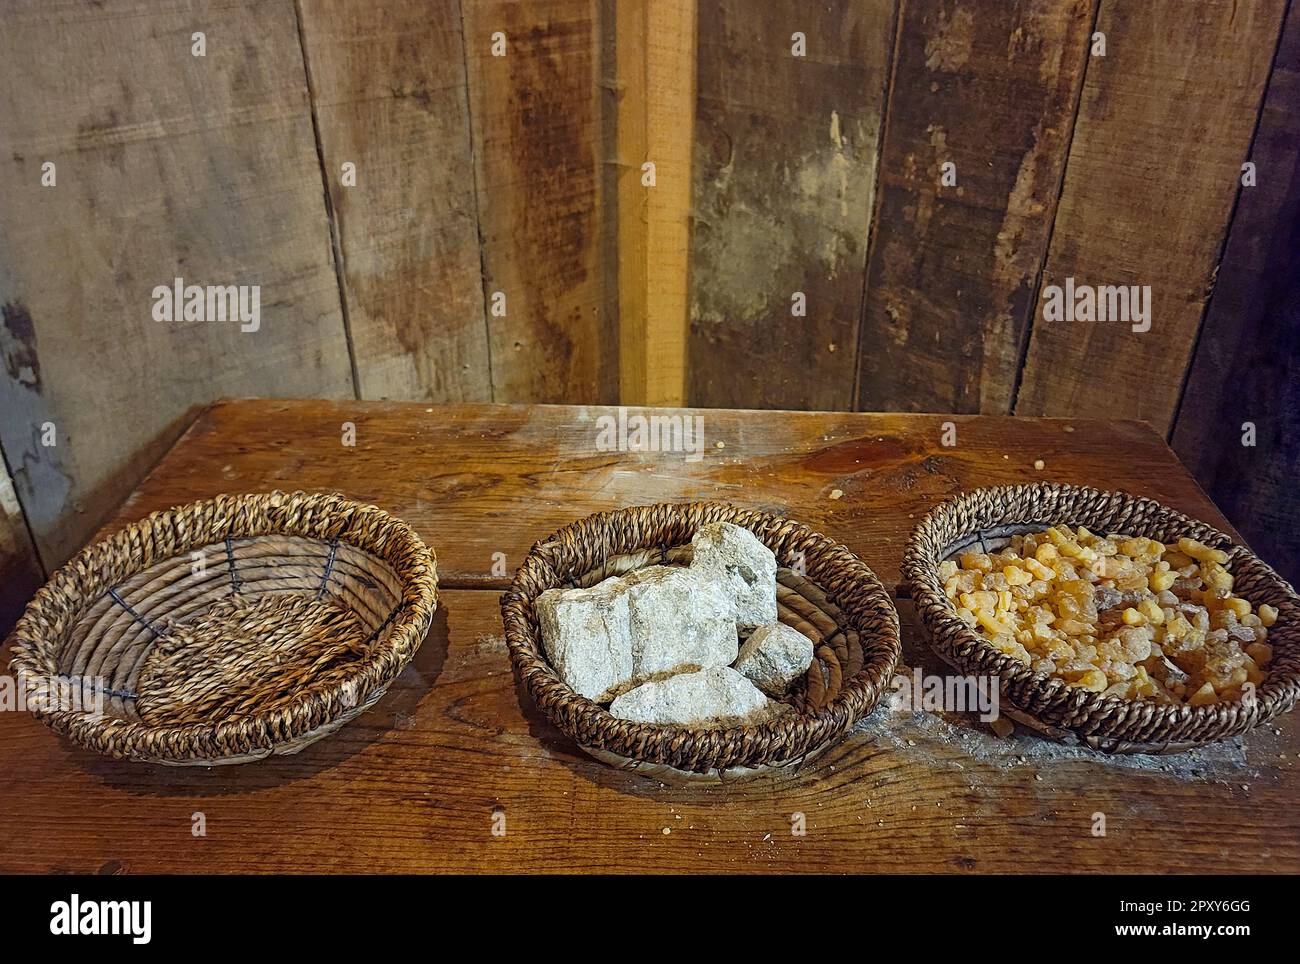 Trozos de incienso y mirra en cestas de mimbre sobre una vieja mesa de madera Foto de stock